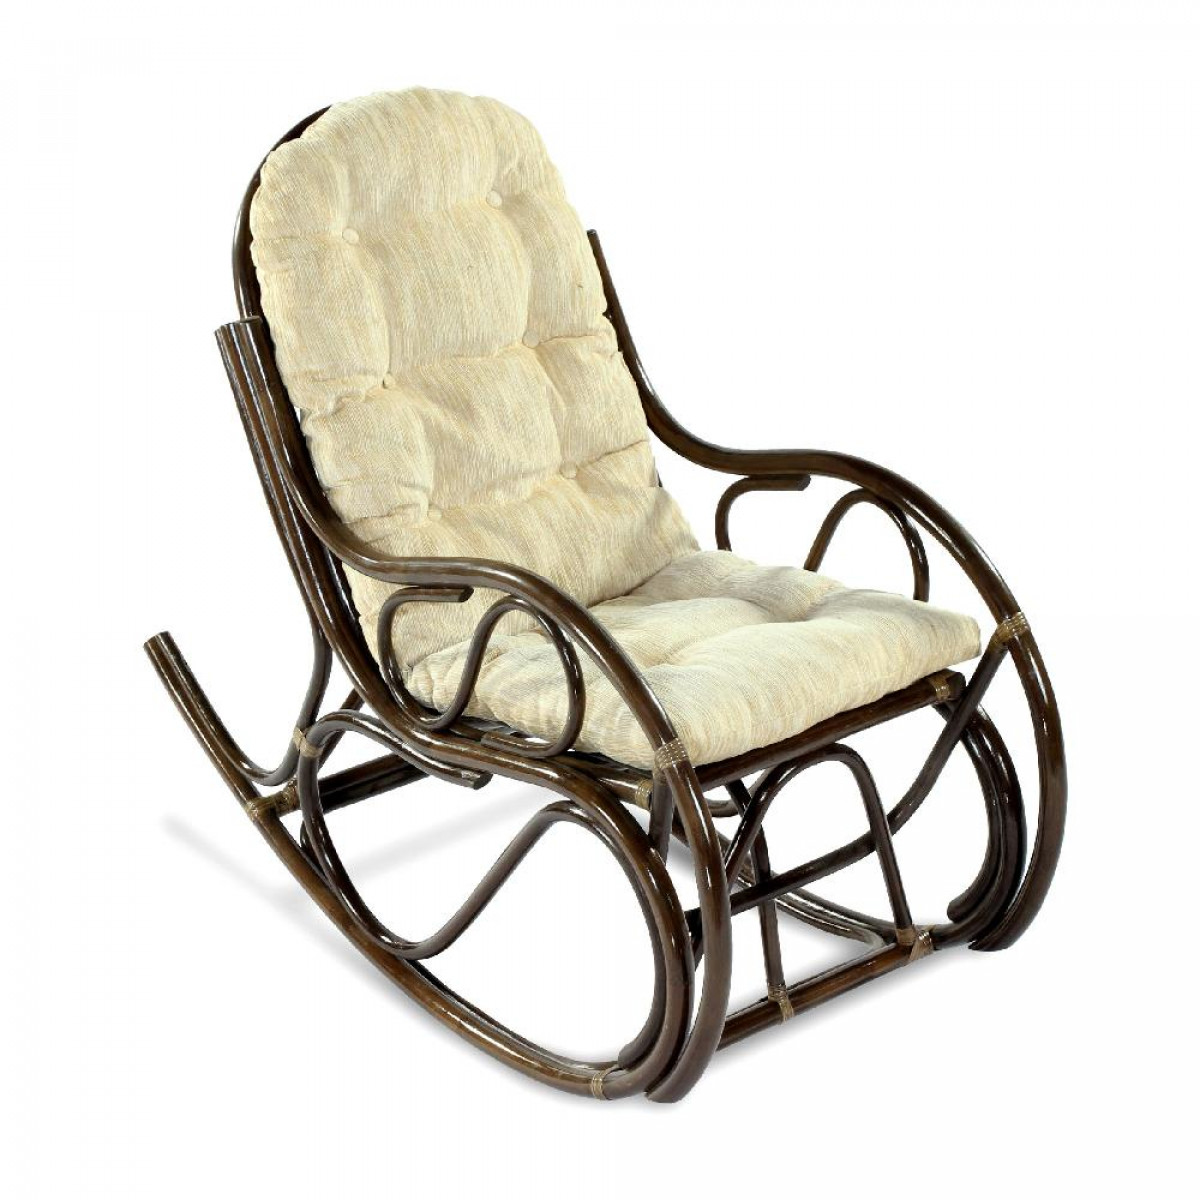 Модели кресла качалки. Кресло из ротанга ЭКОДИЗАЙН. Кресло качалка ЭКОДИЗАЙН Classic 05/10 б. Кресло качалка Rona Rotang. GH-8531 кресло качалка Леальта.